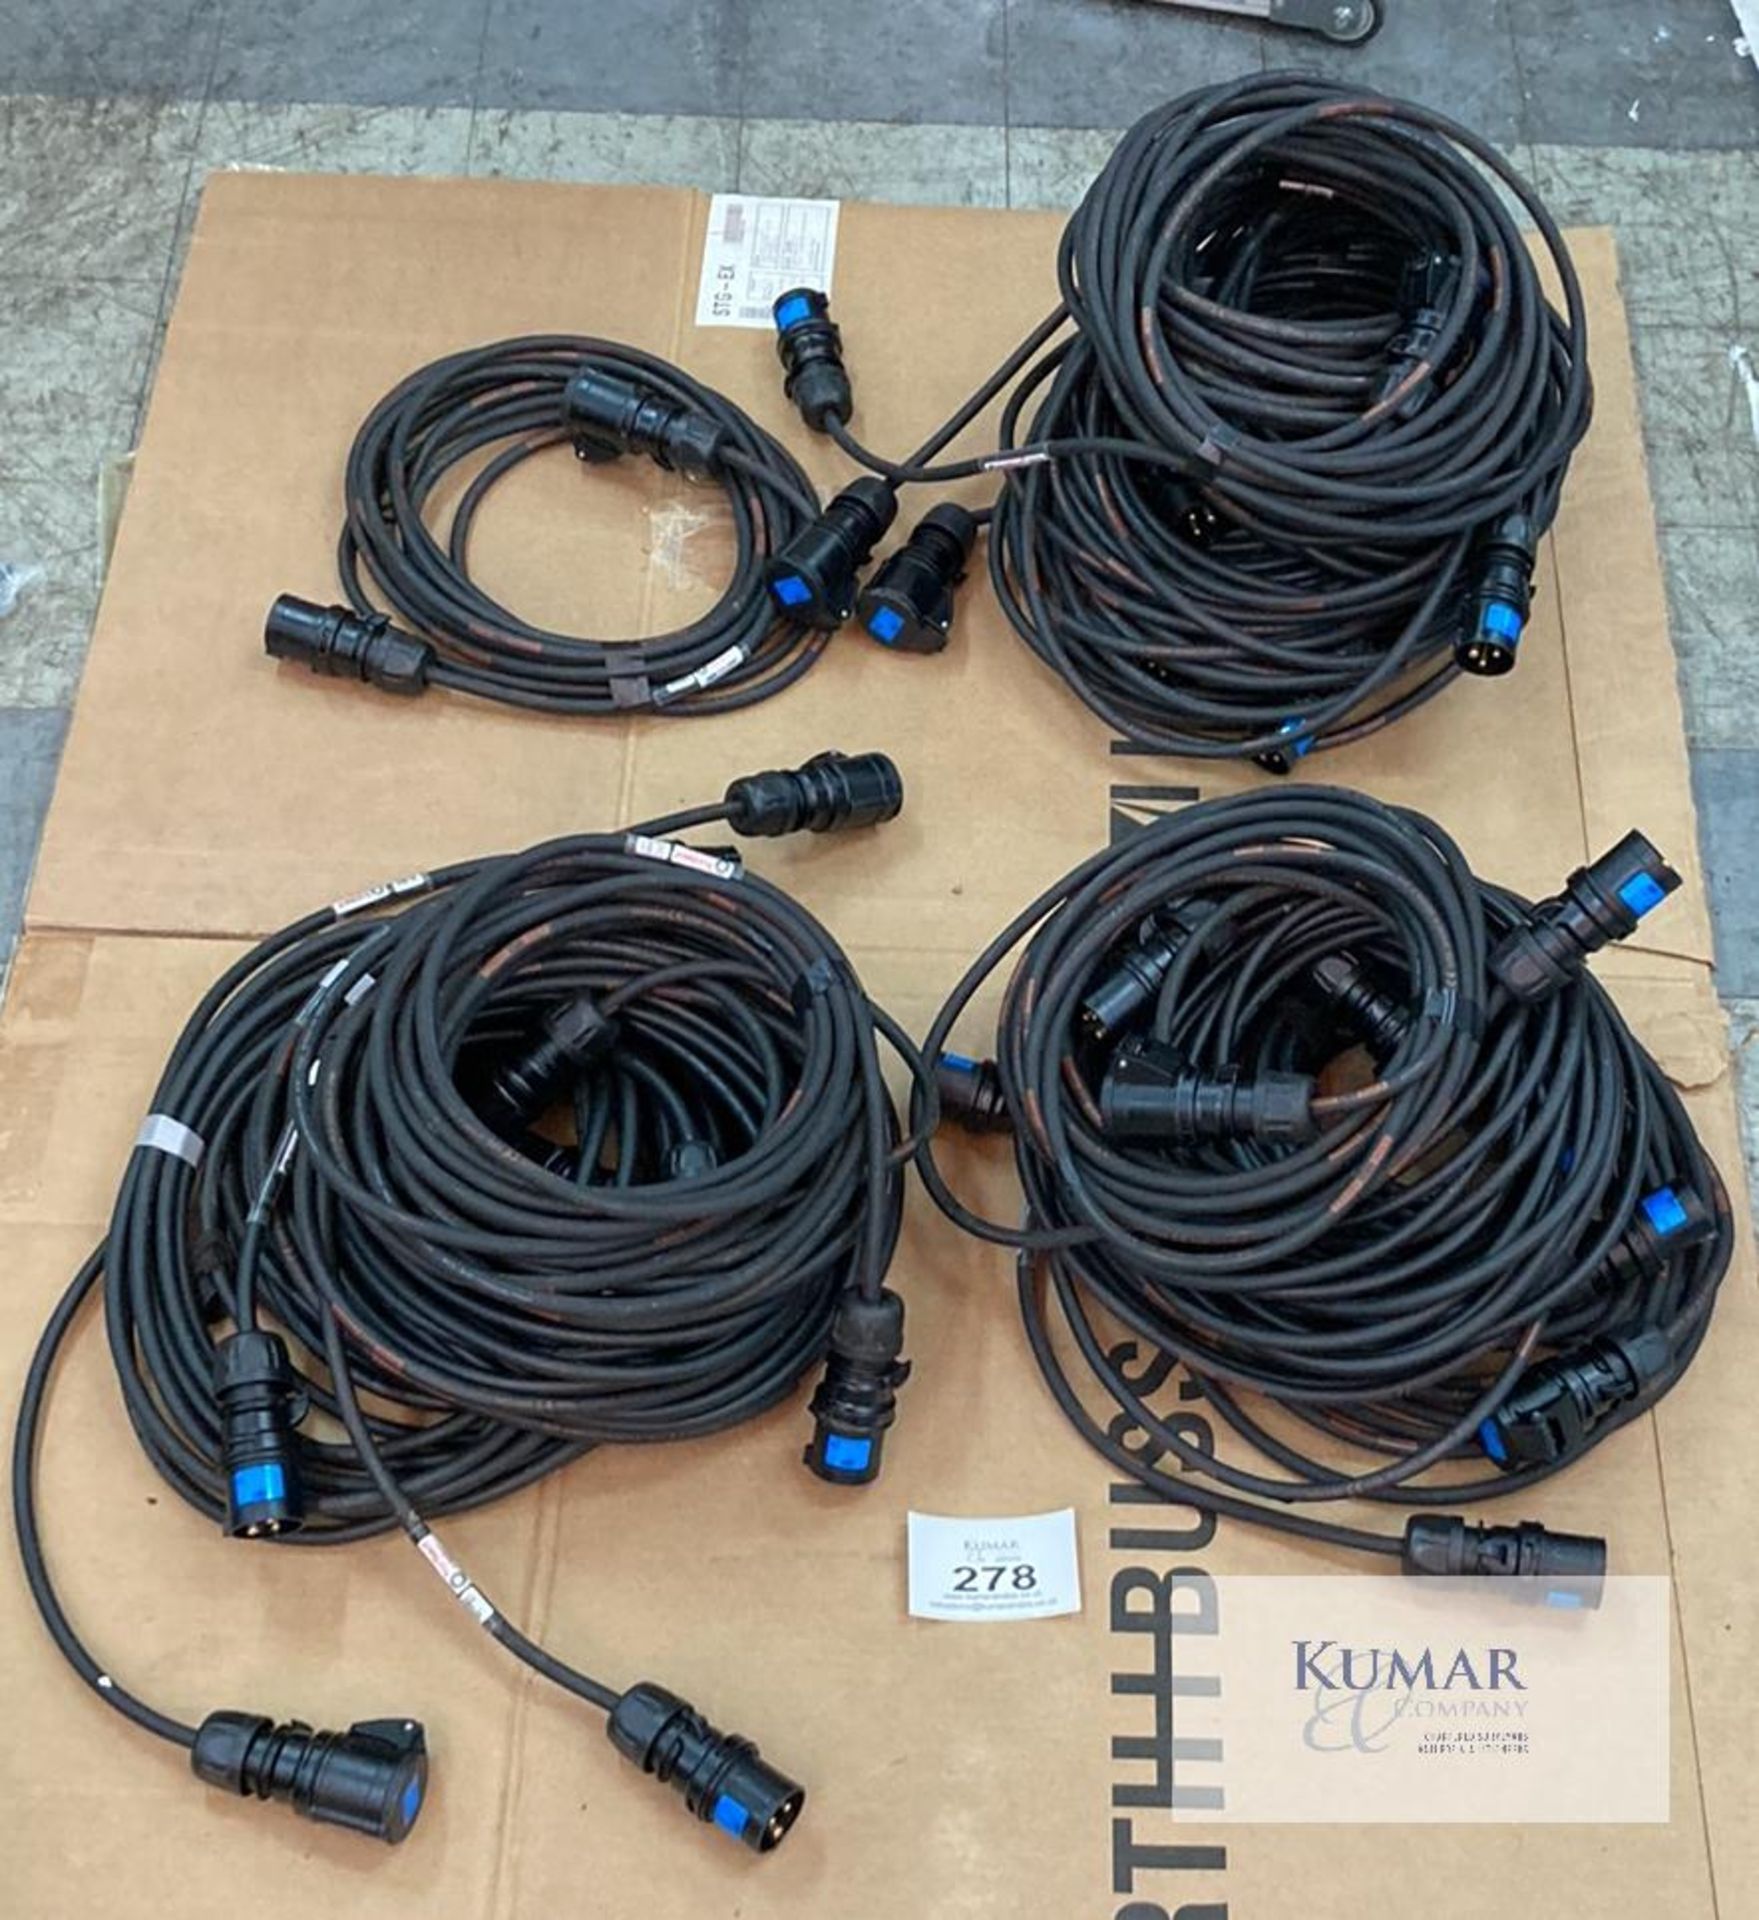 20 of 10m 16A cable midnight black (2.5mm) Description: Bundle of 20x 10m 3-core (2.5mm) 16A